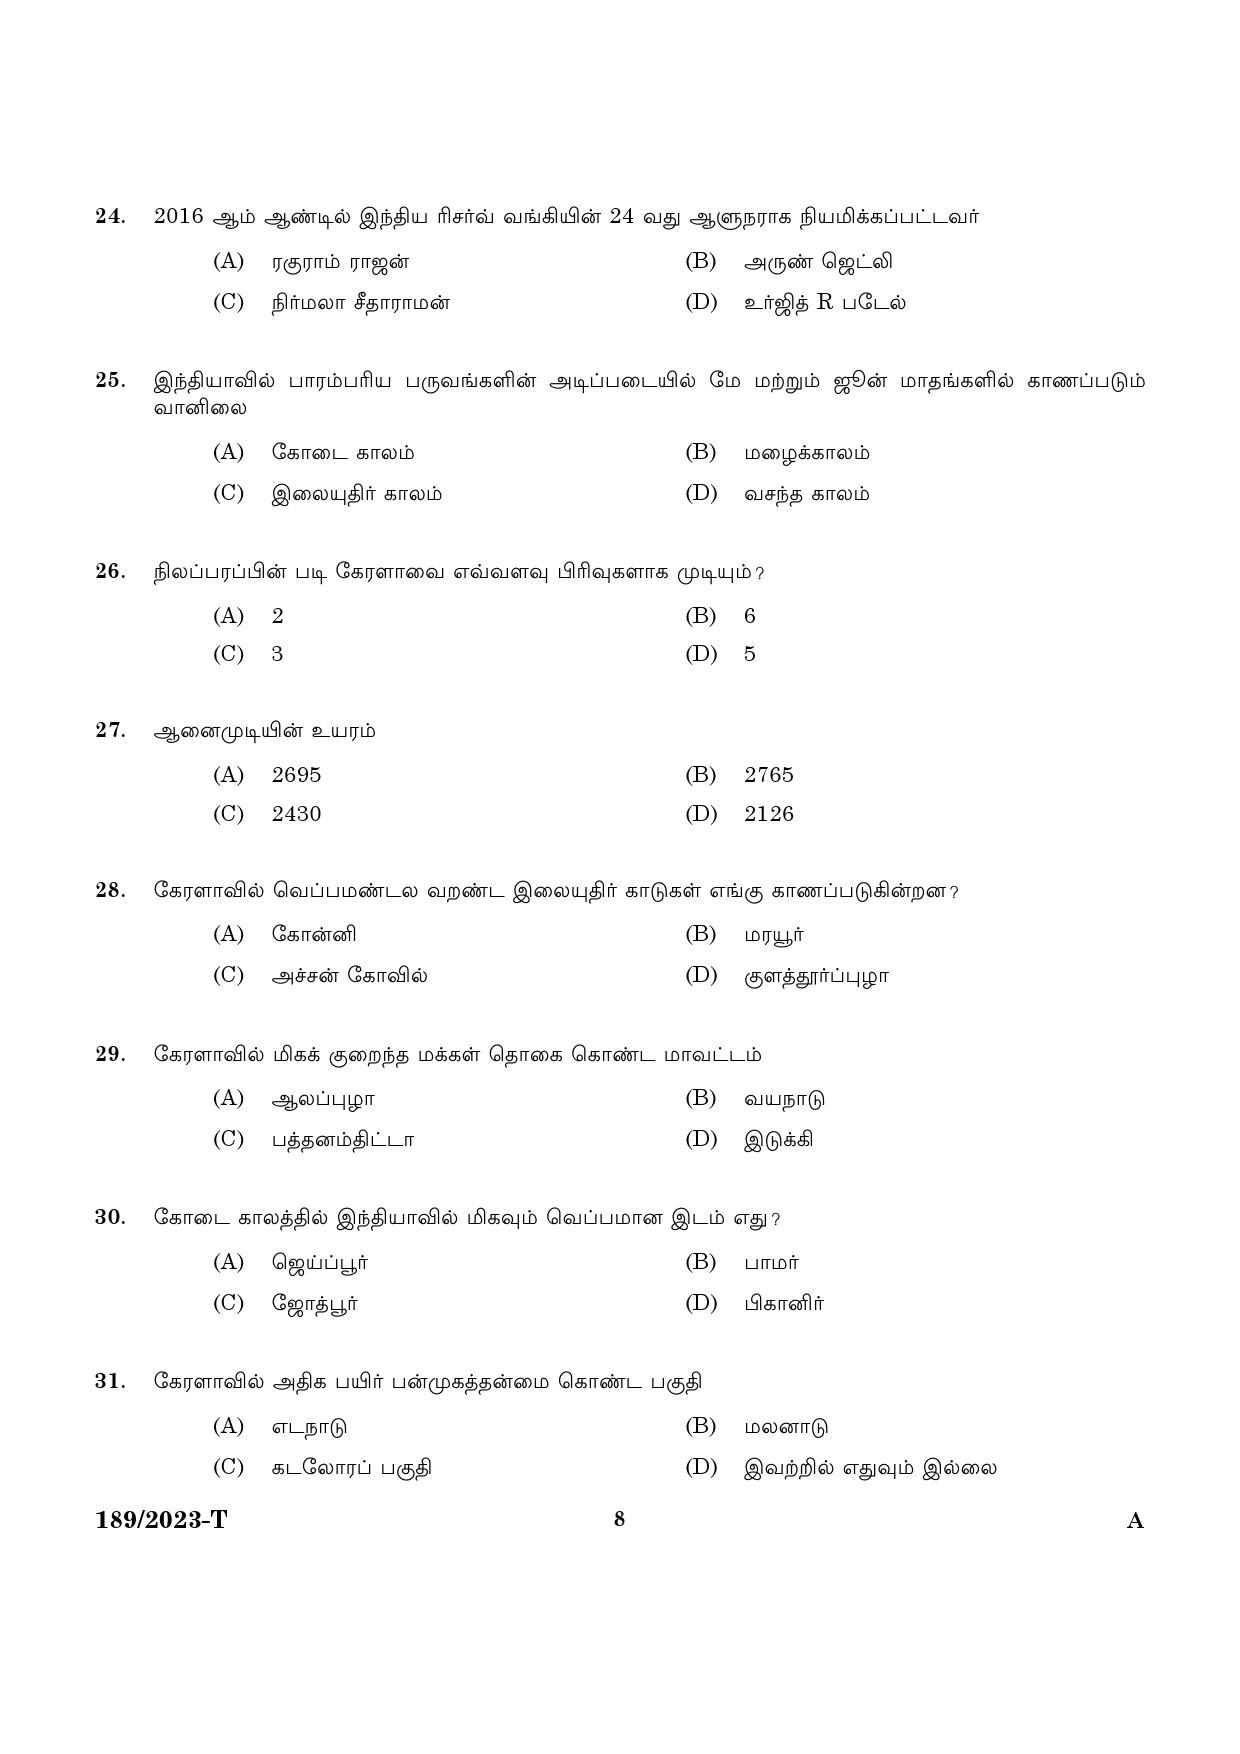 KPSC LGS Tamil Exam 2023 Code 1892023 T 6